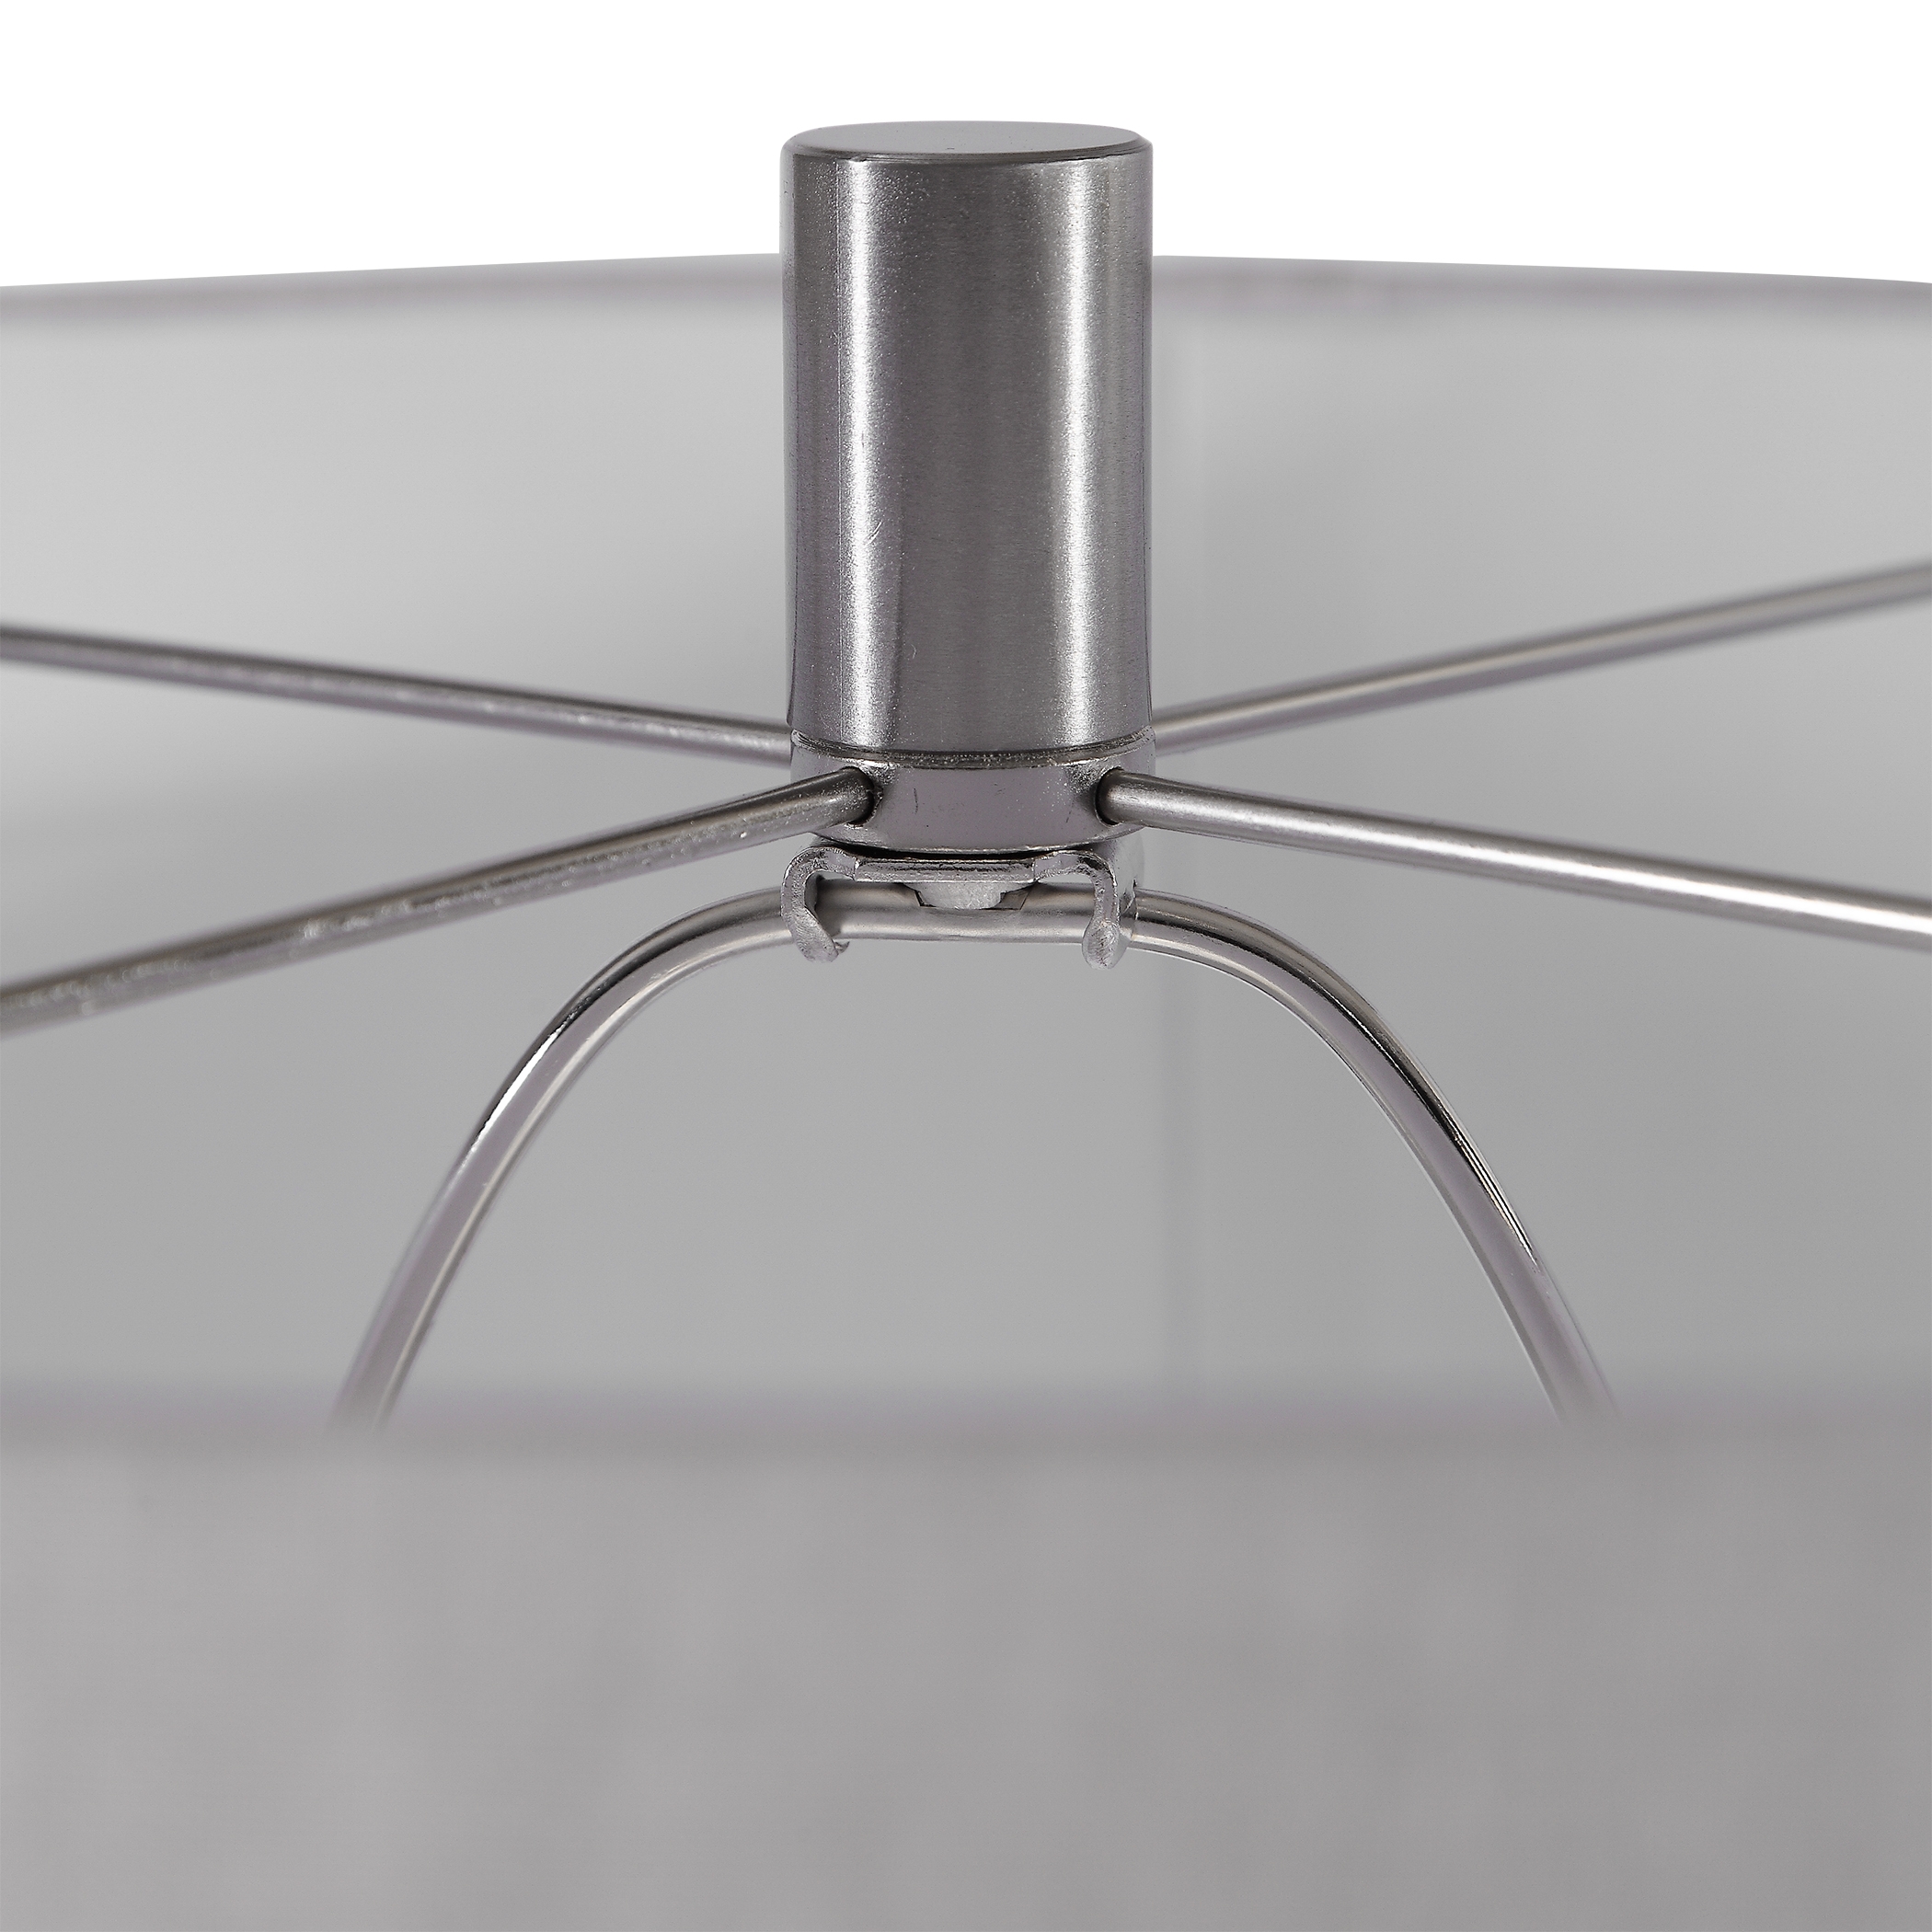 Arlan Dark Charcoal Table Lamp - Image 1